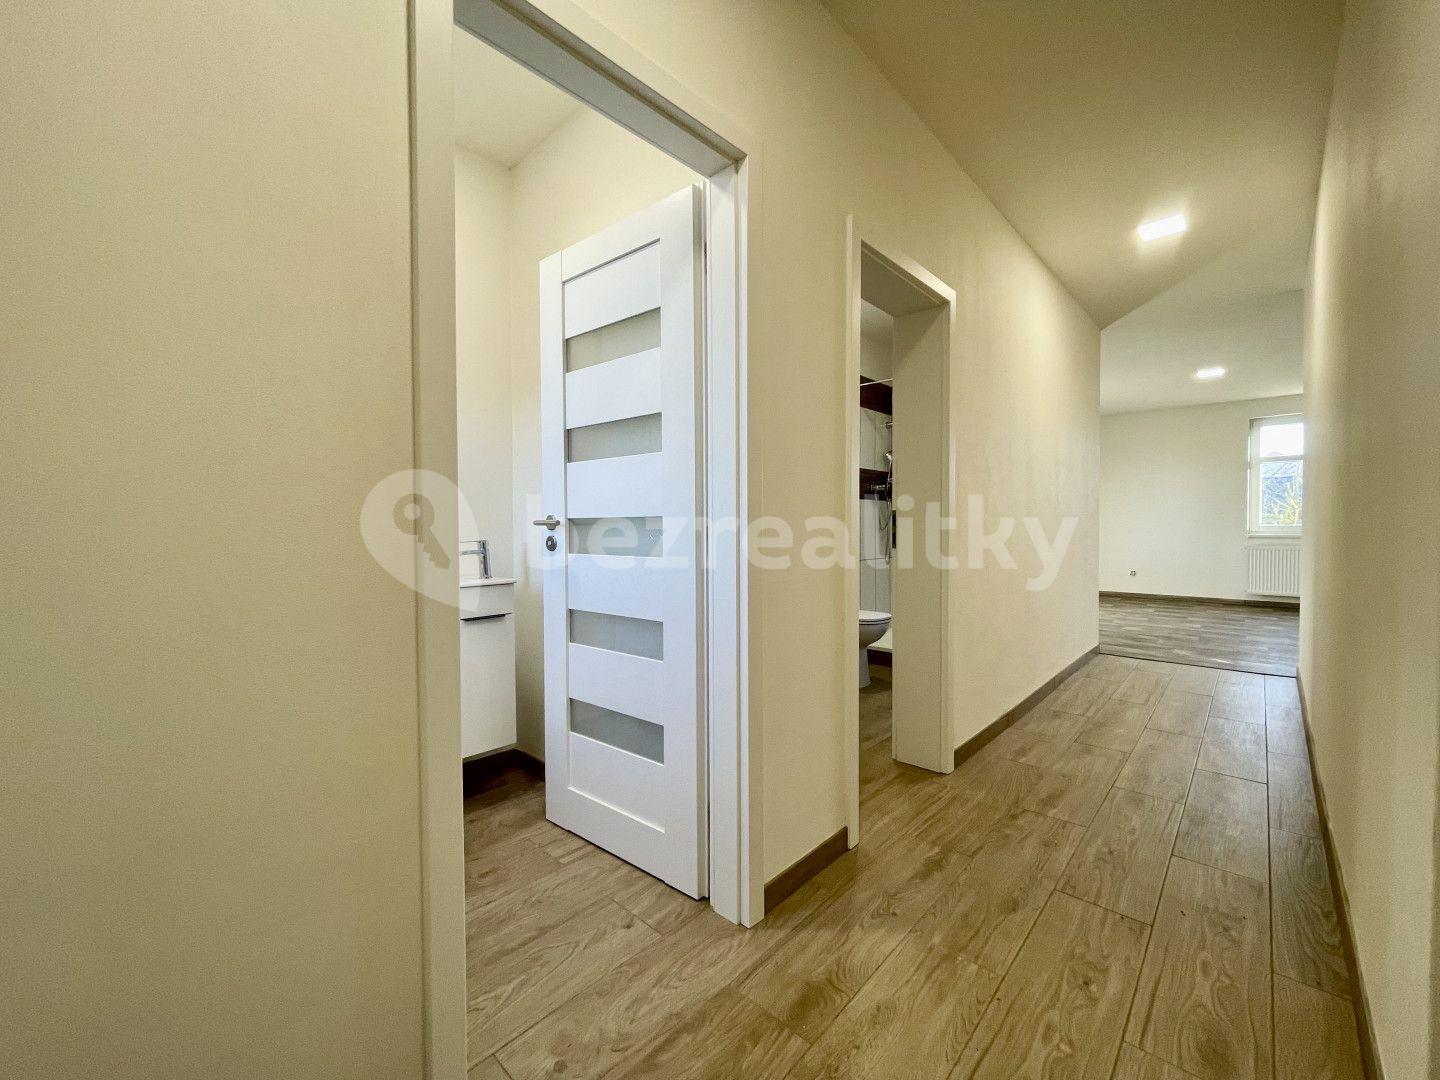 1 bedroom with open-plan kitchen flat for sale, 42 m², Dolní Hořice, Jihočeský Region